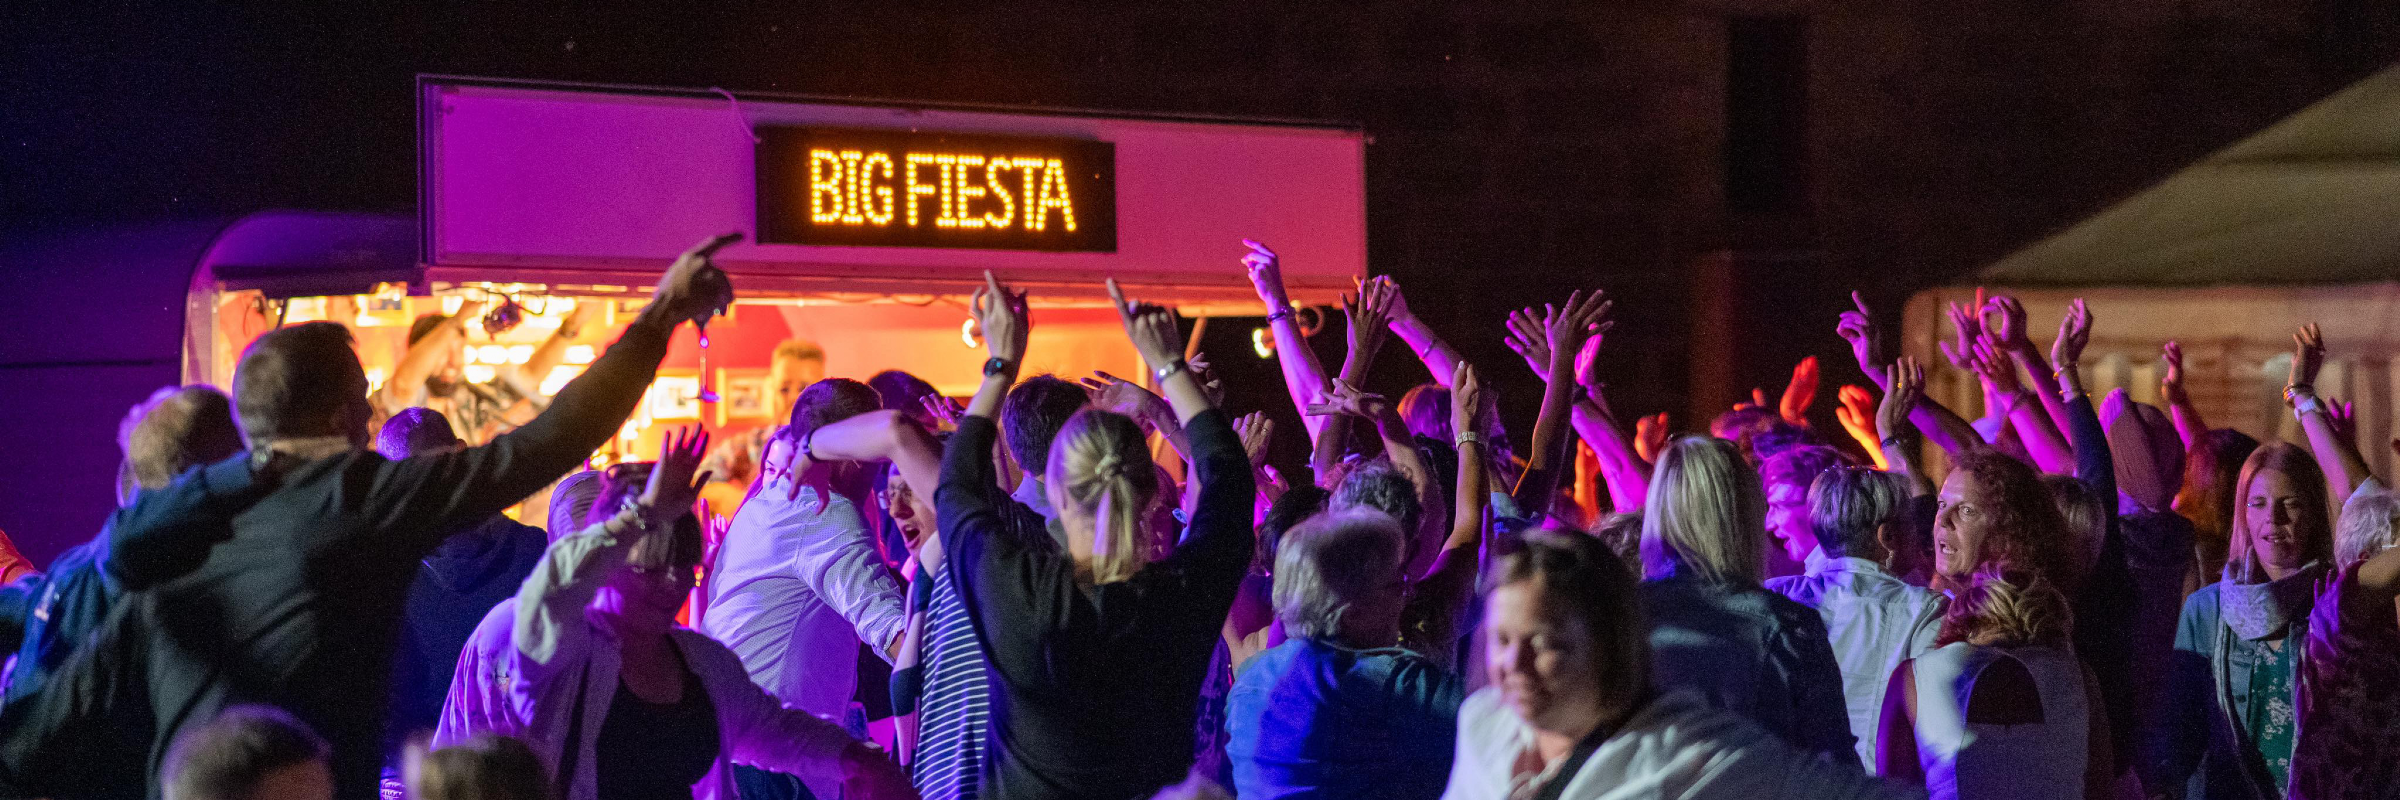 Big Fiesta, groupe de musique Chanteur en représentation à Marne - photo de couverture n° 5